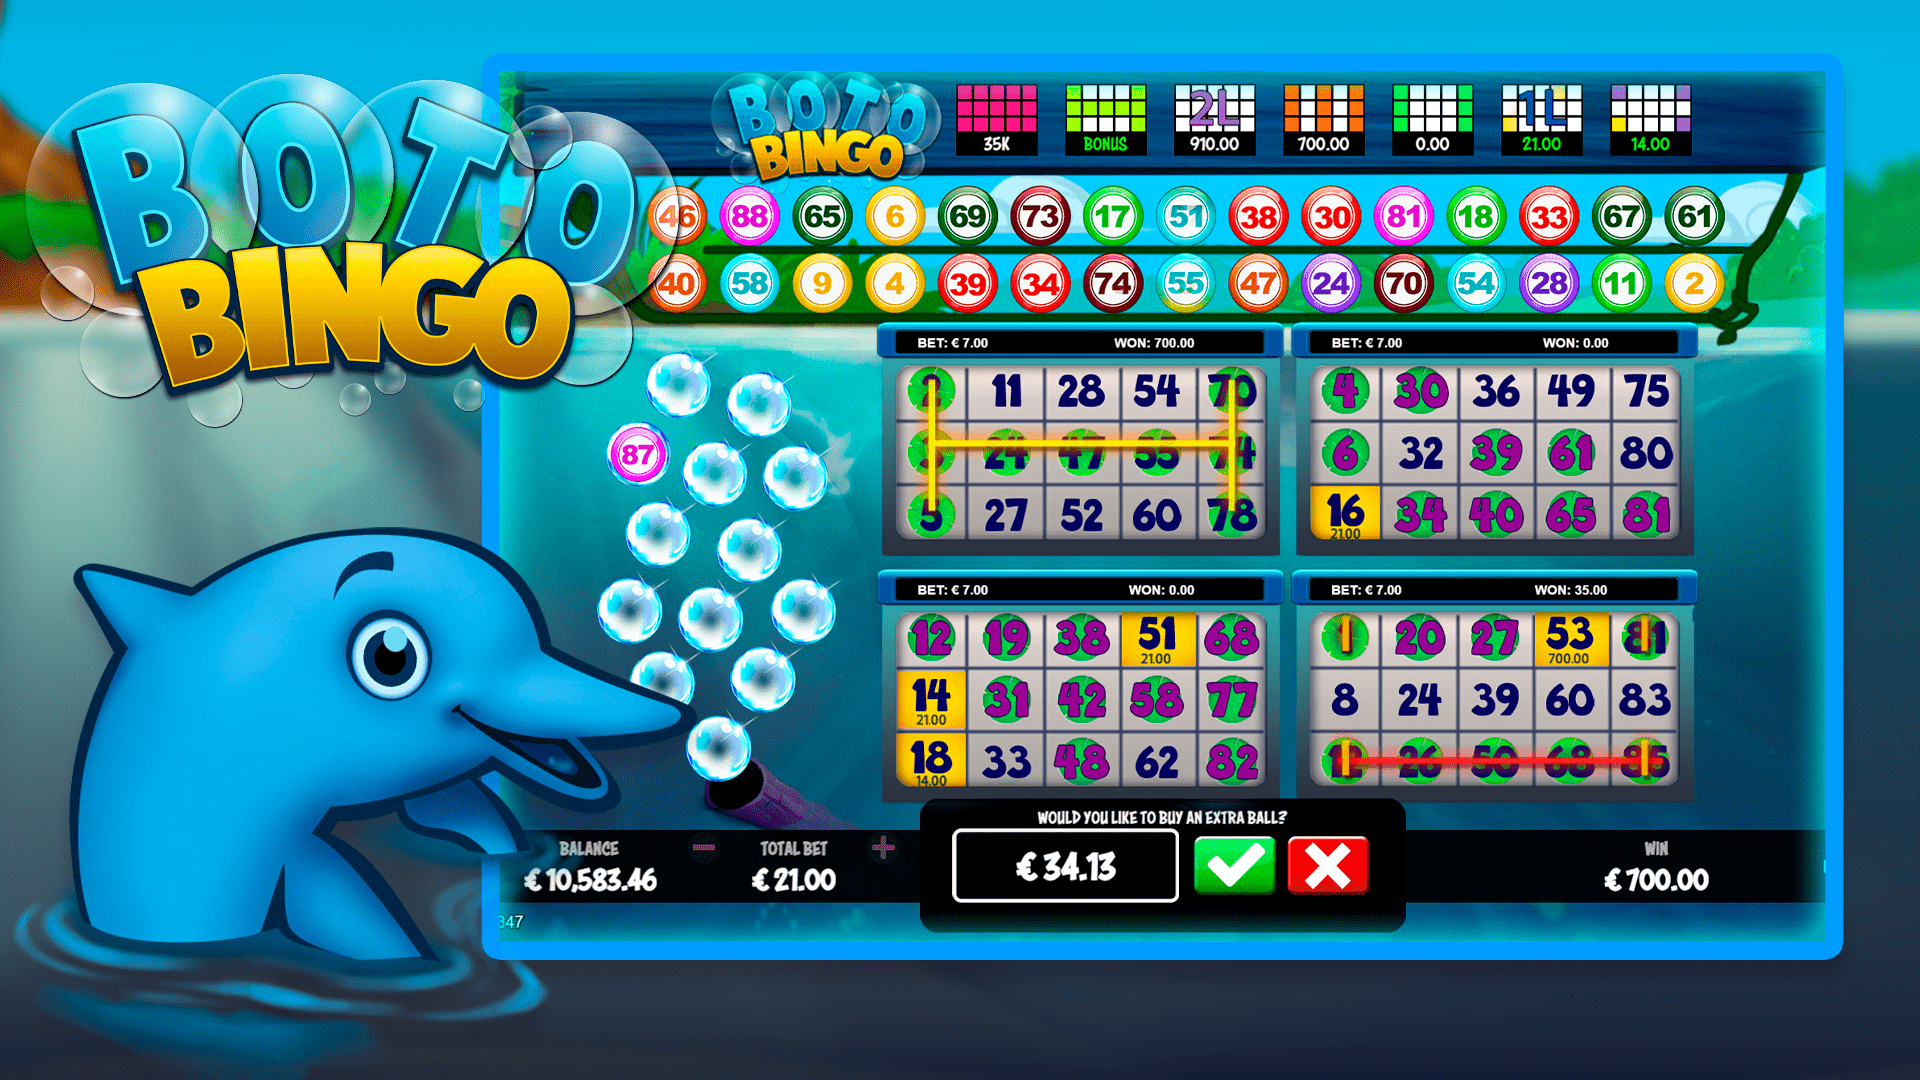 BIG WIN!!! BRUNO BINGO Huge win - Casino Games - free spins (Online slots)